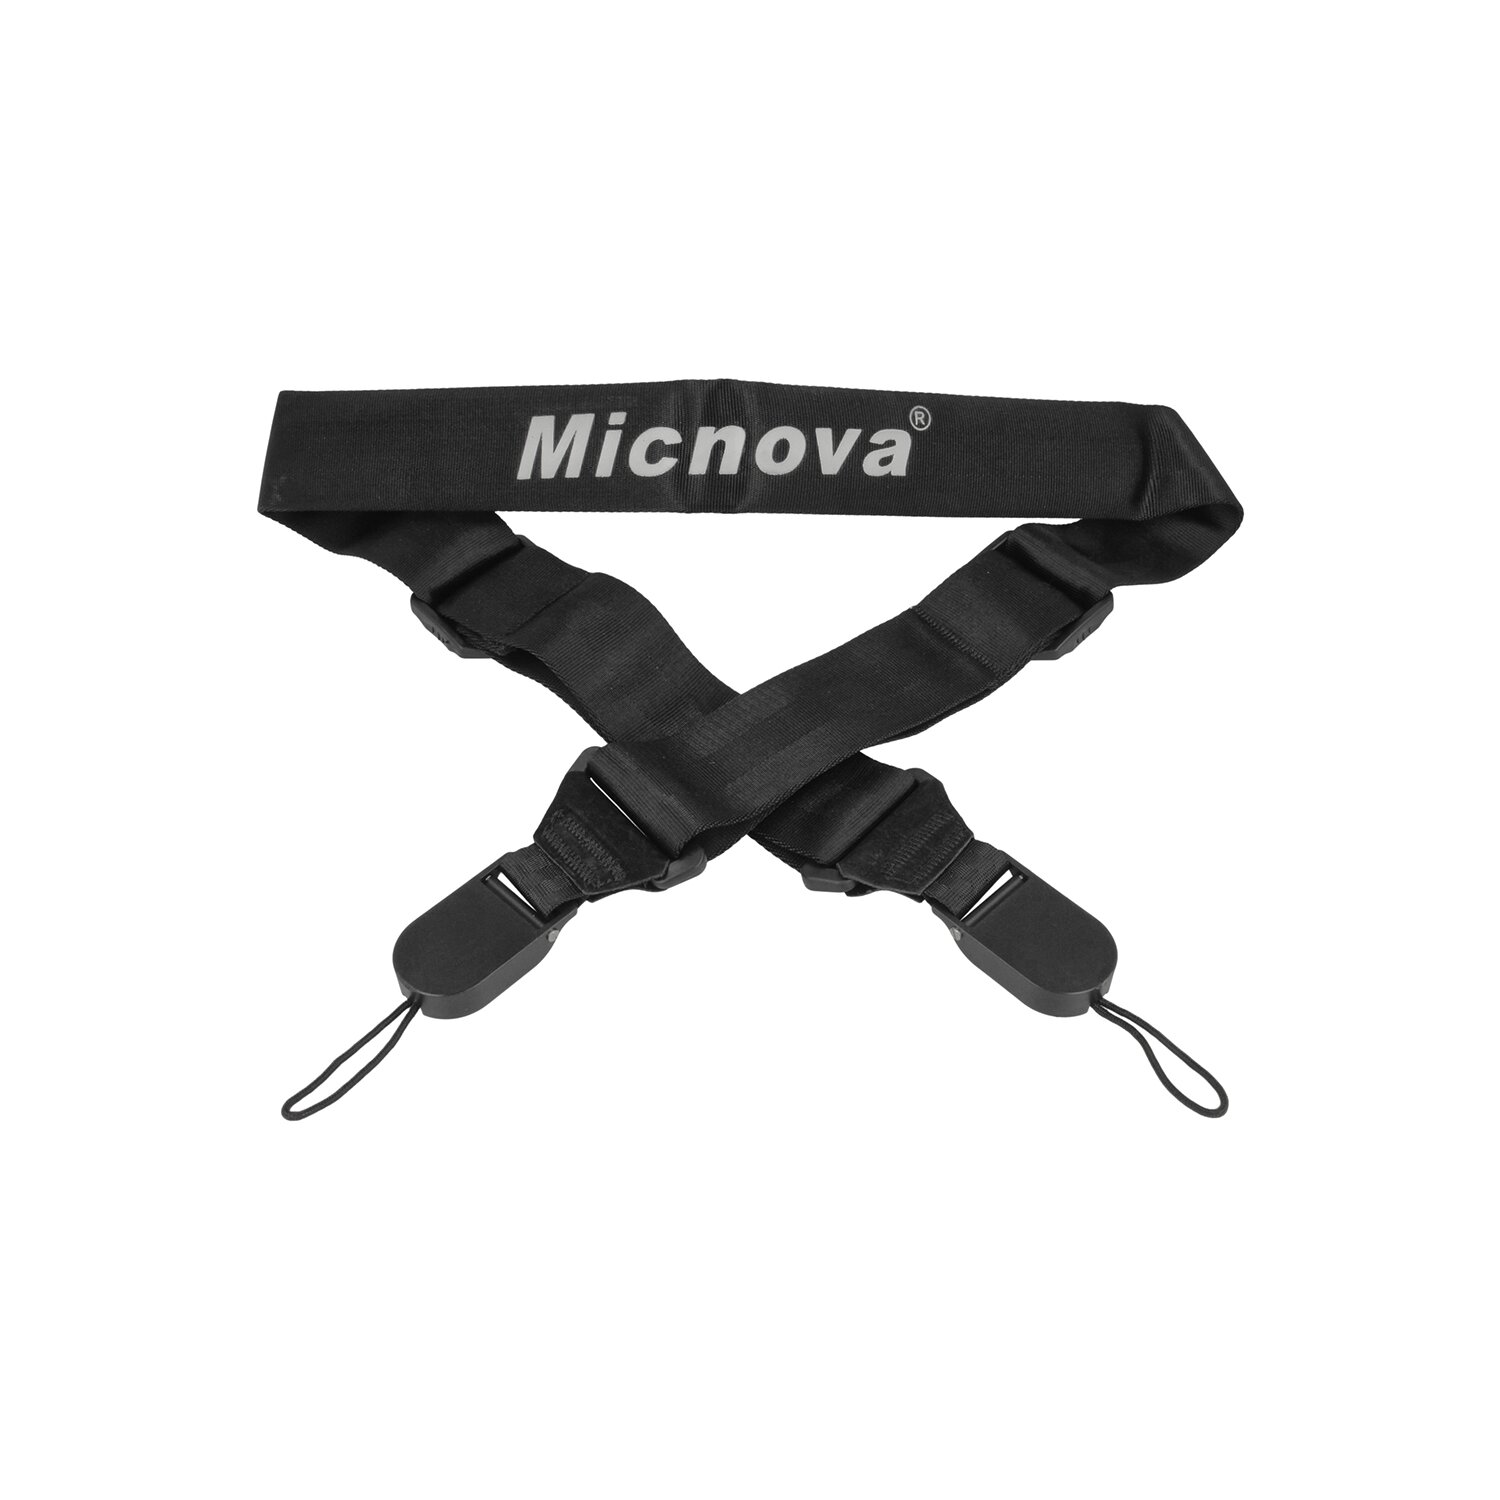 Micnova Kameragurt Tragegurt | Kamera Sicherheitsgurt gepolstert  anschmiegsam | Längenverstellbarer Kameragurt mit Schnellverschluss